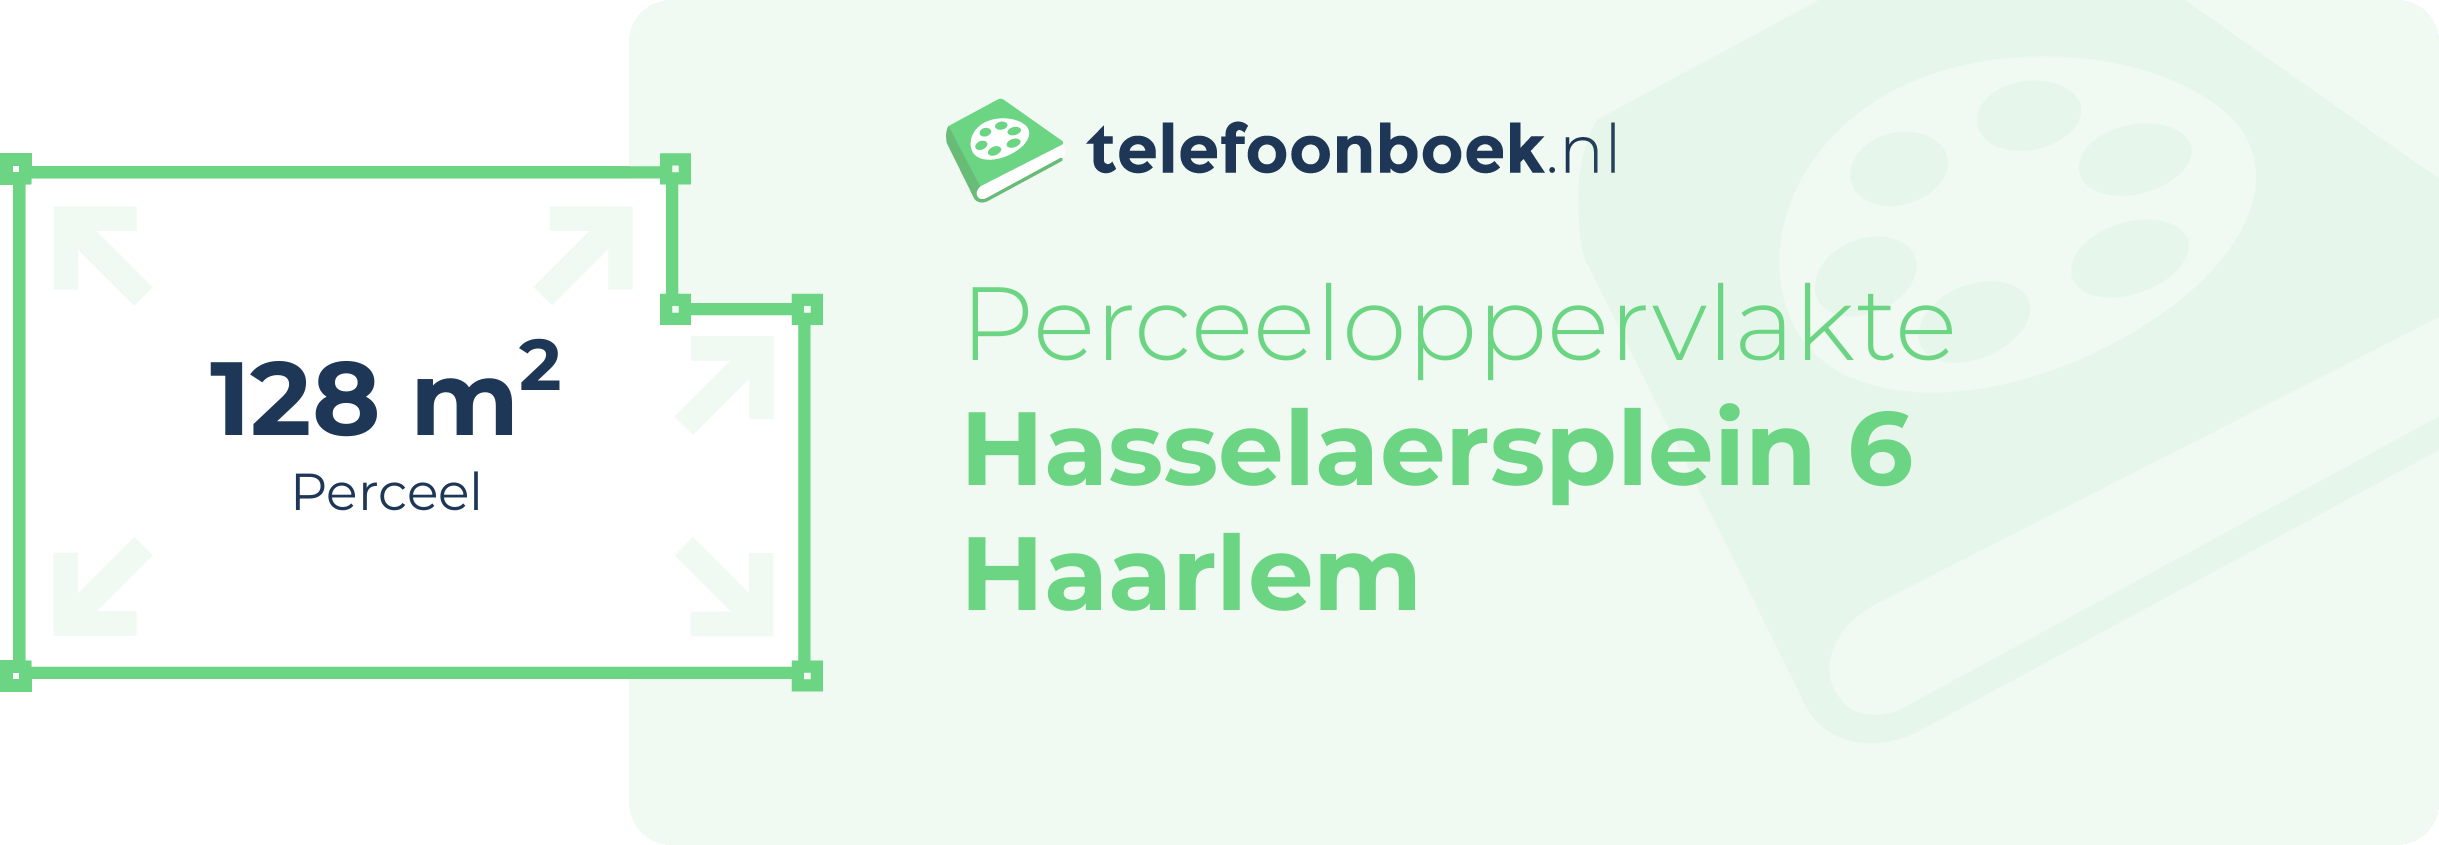 Perceeloppervlakte Hasselaersplein 6 Haarlem